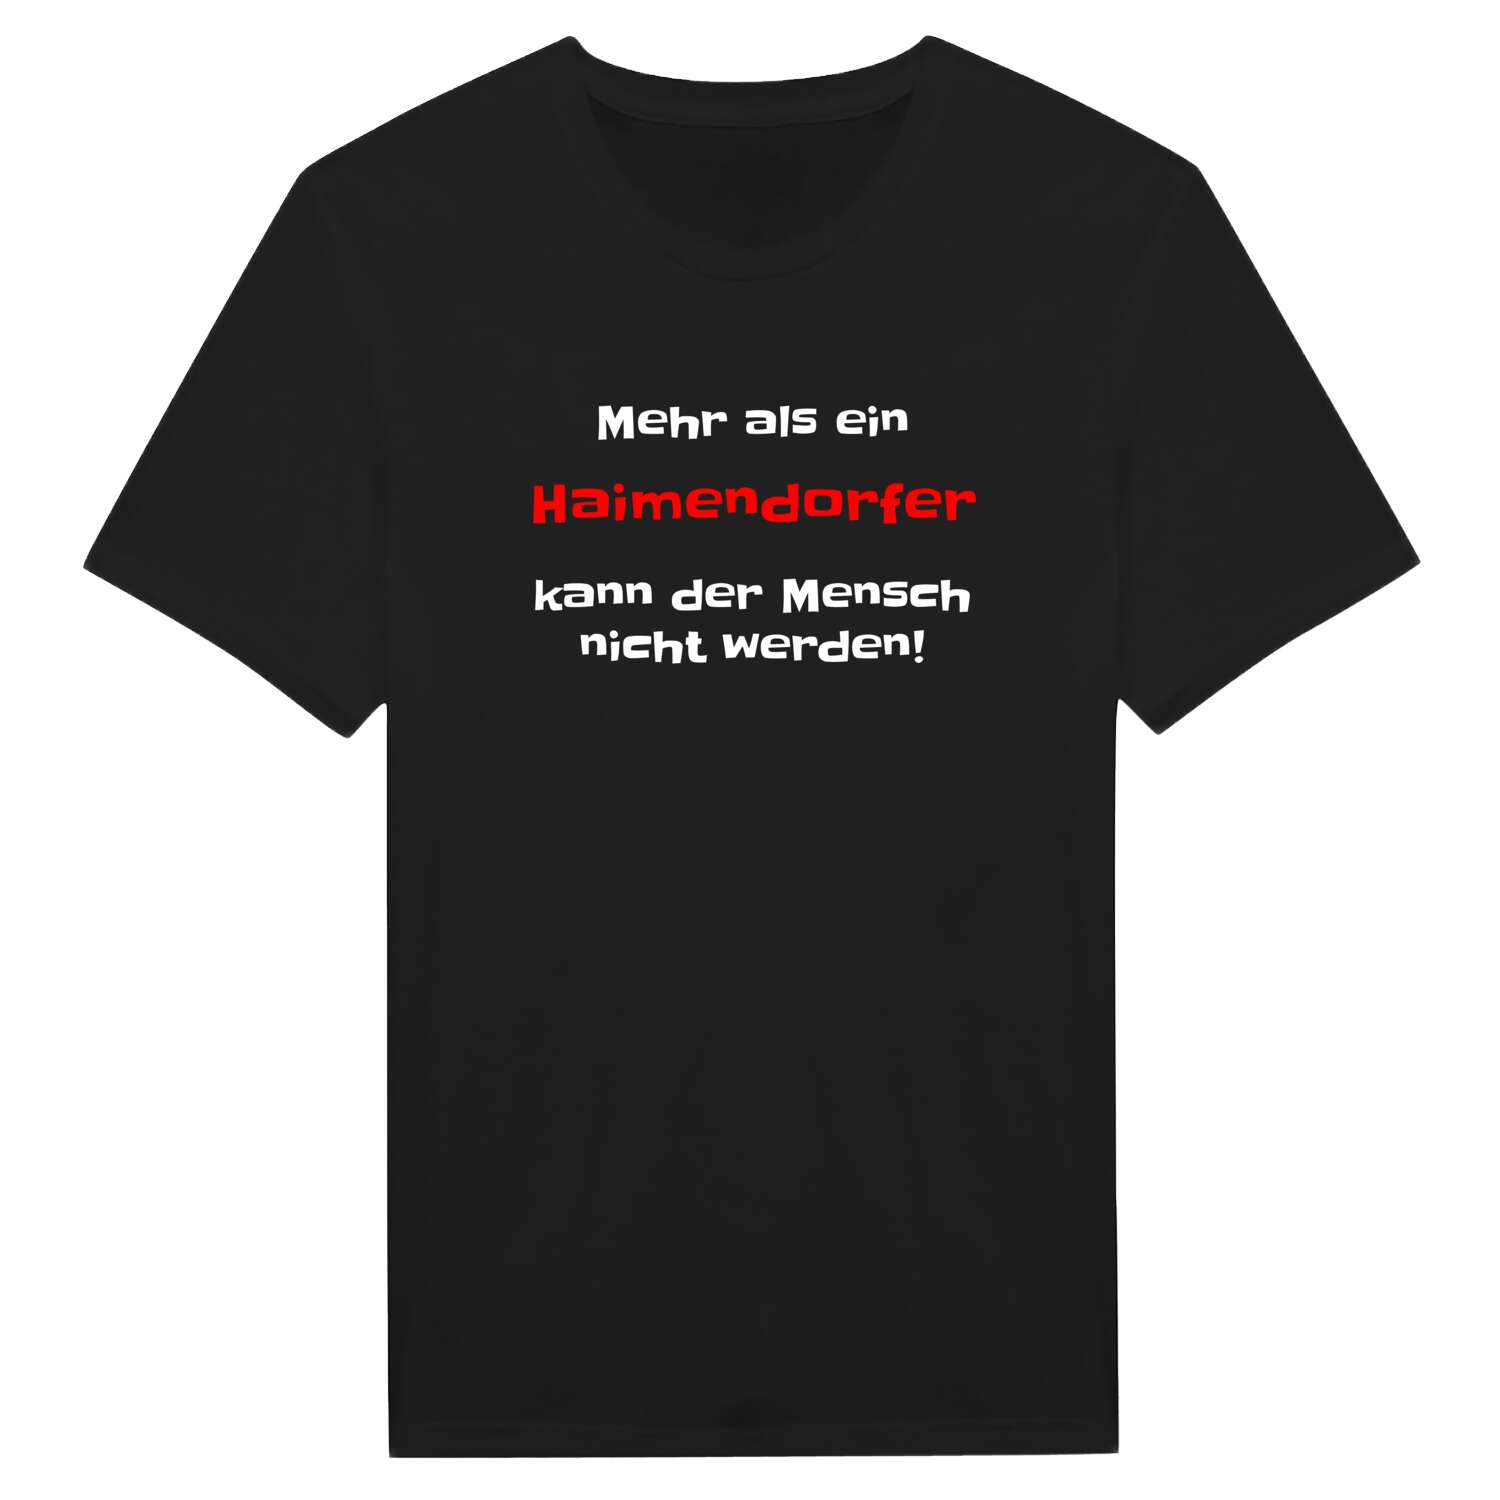 Haimendorf T-Shirt »Mehr als ein«